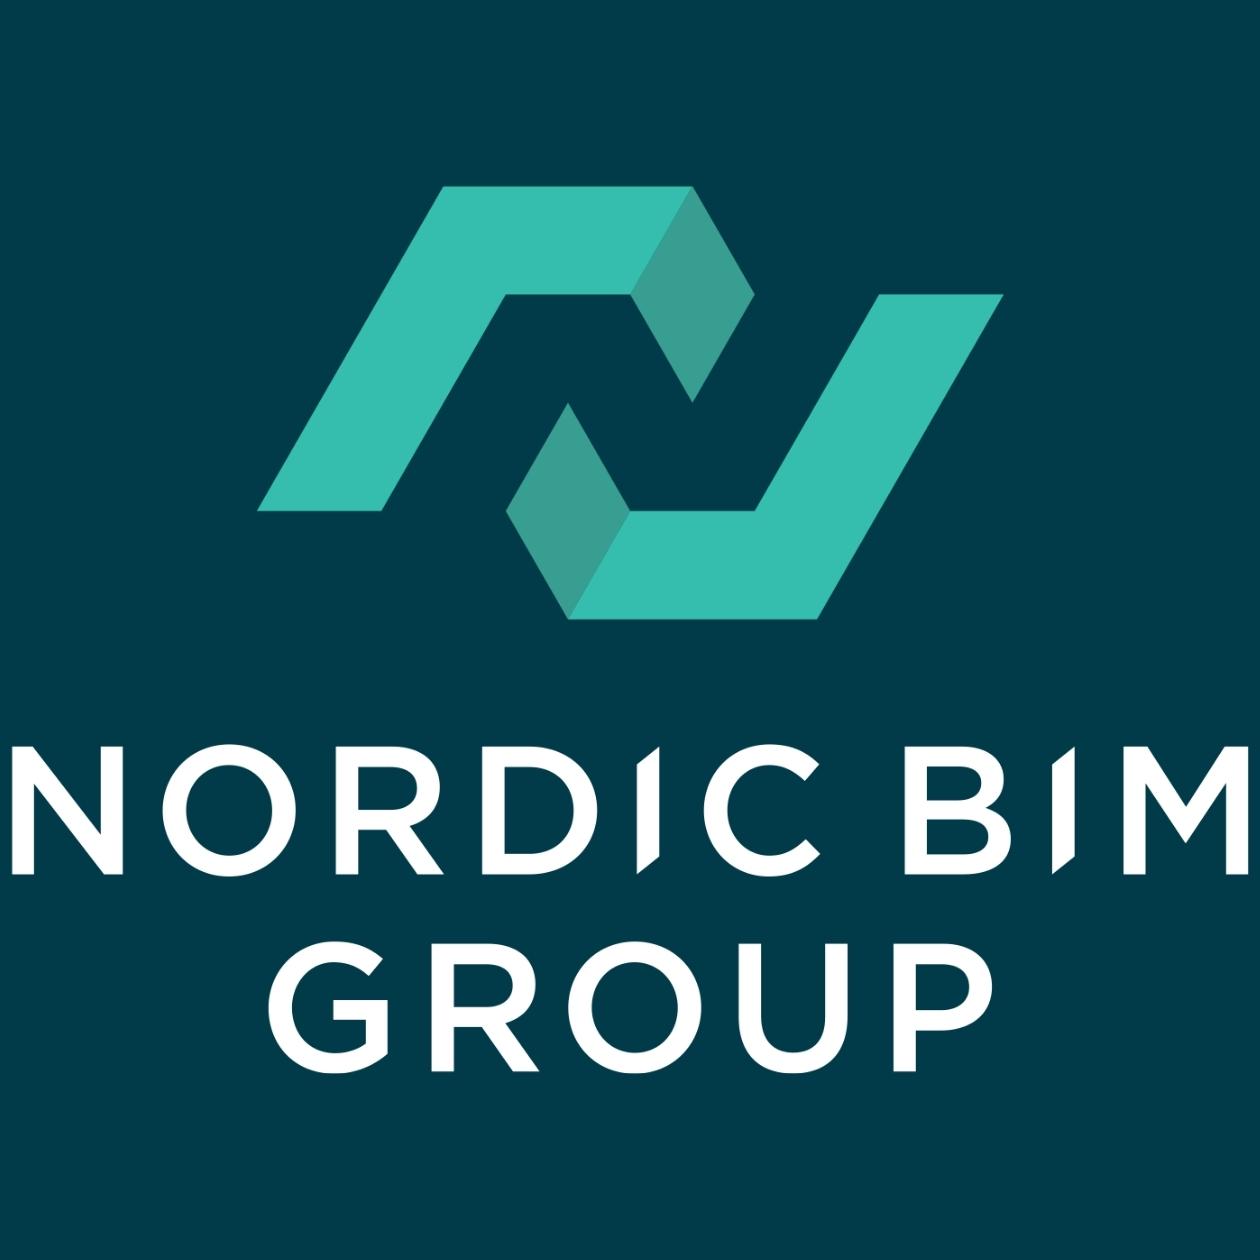 Nordic BIM Group logo